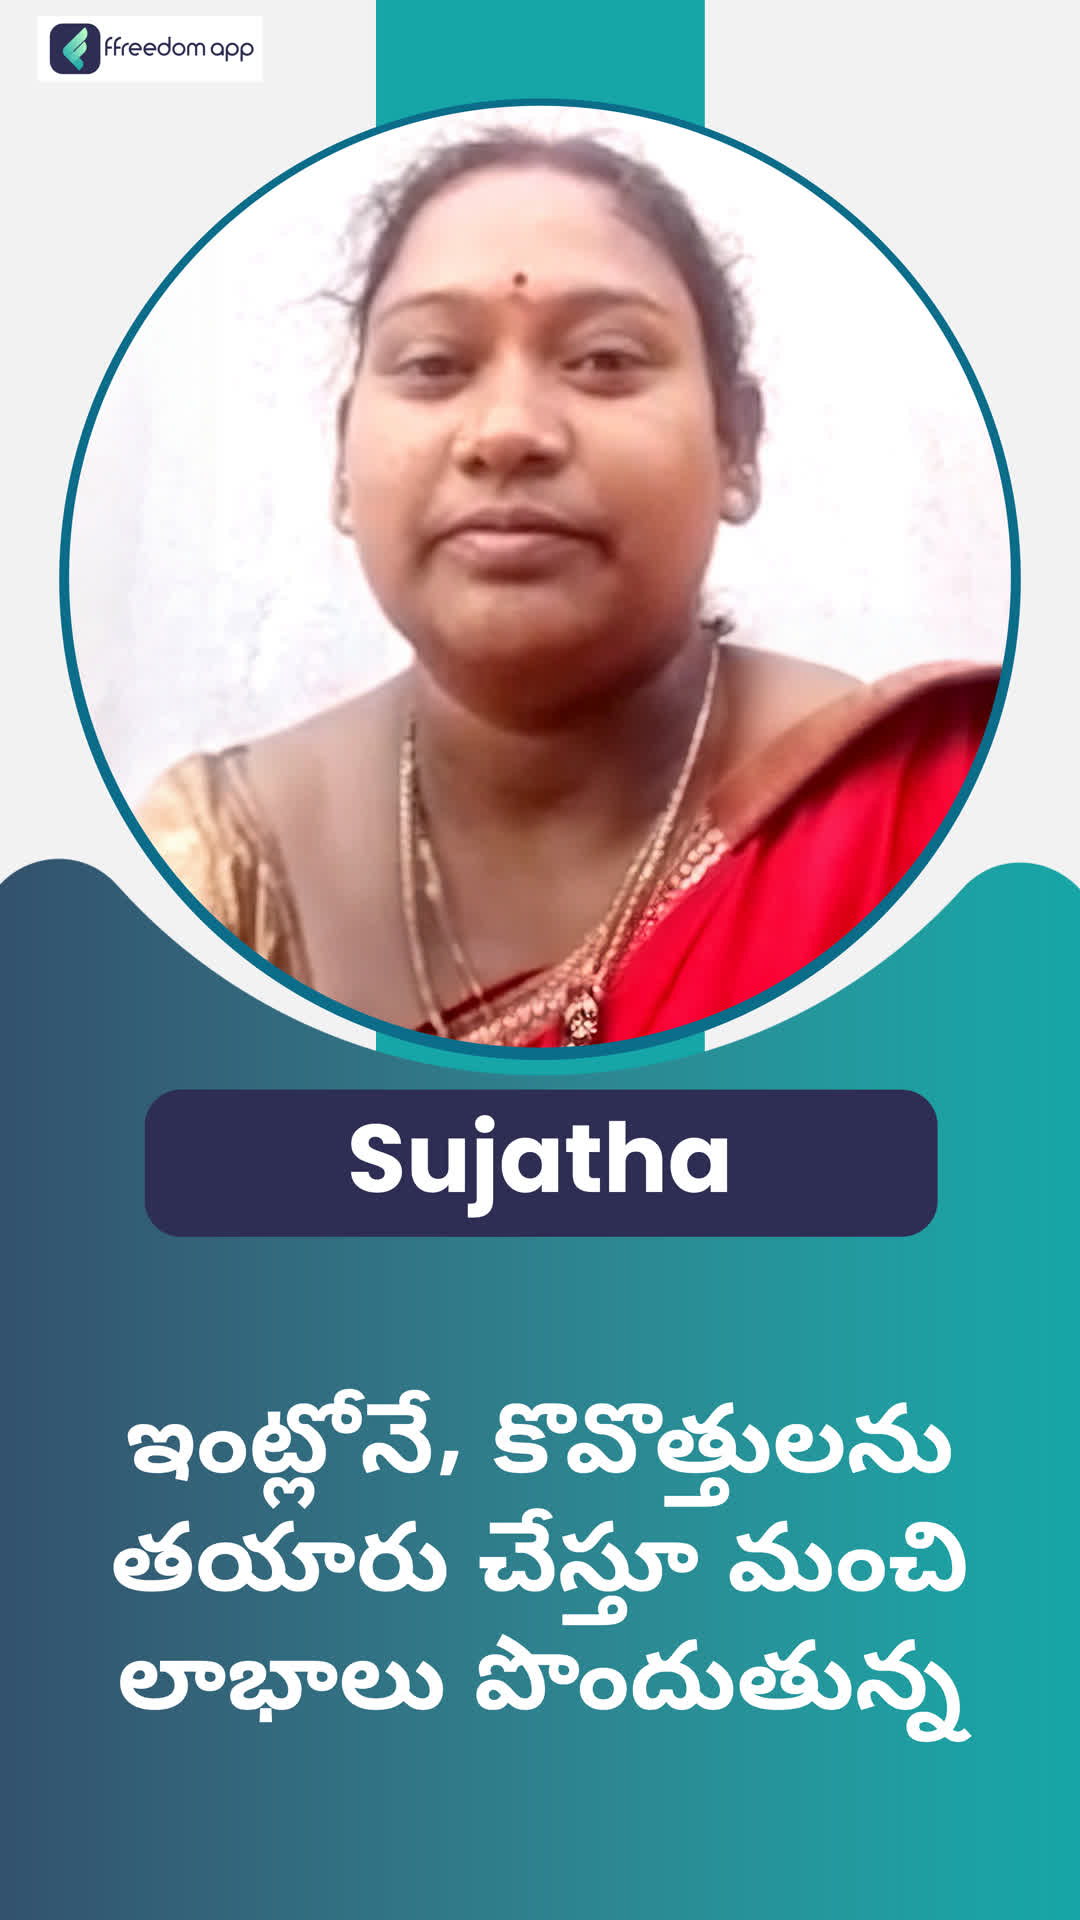 Sujatha's Honest Review of ffreedom app - Jagtial ,Telangana